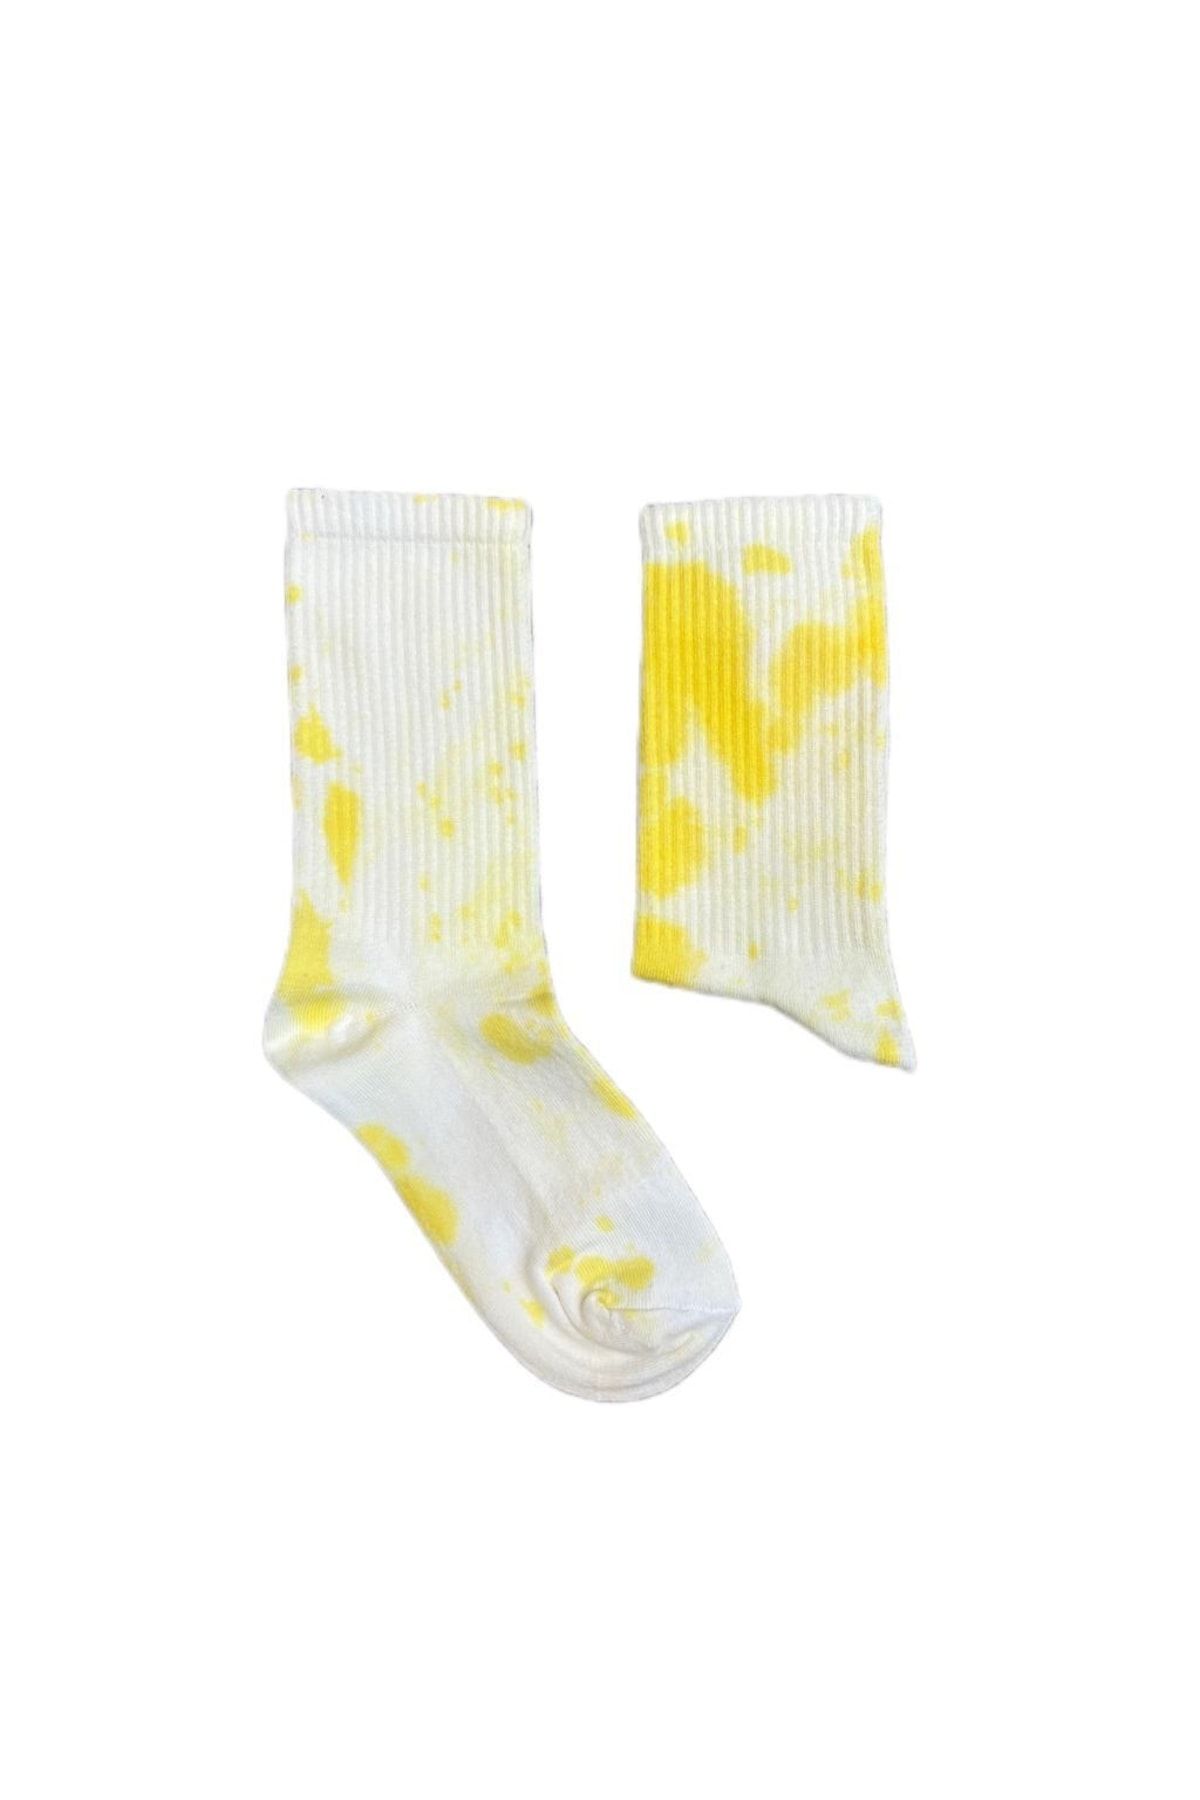 Kuzgunshop Batik (beyaz-sarı) Unisex Çorap